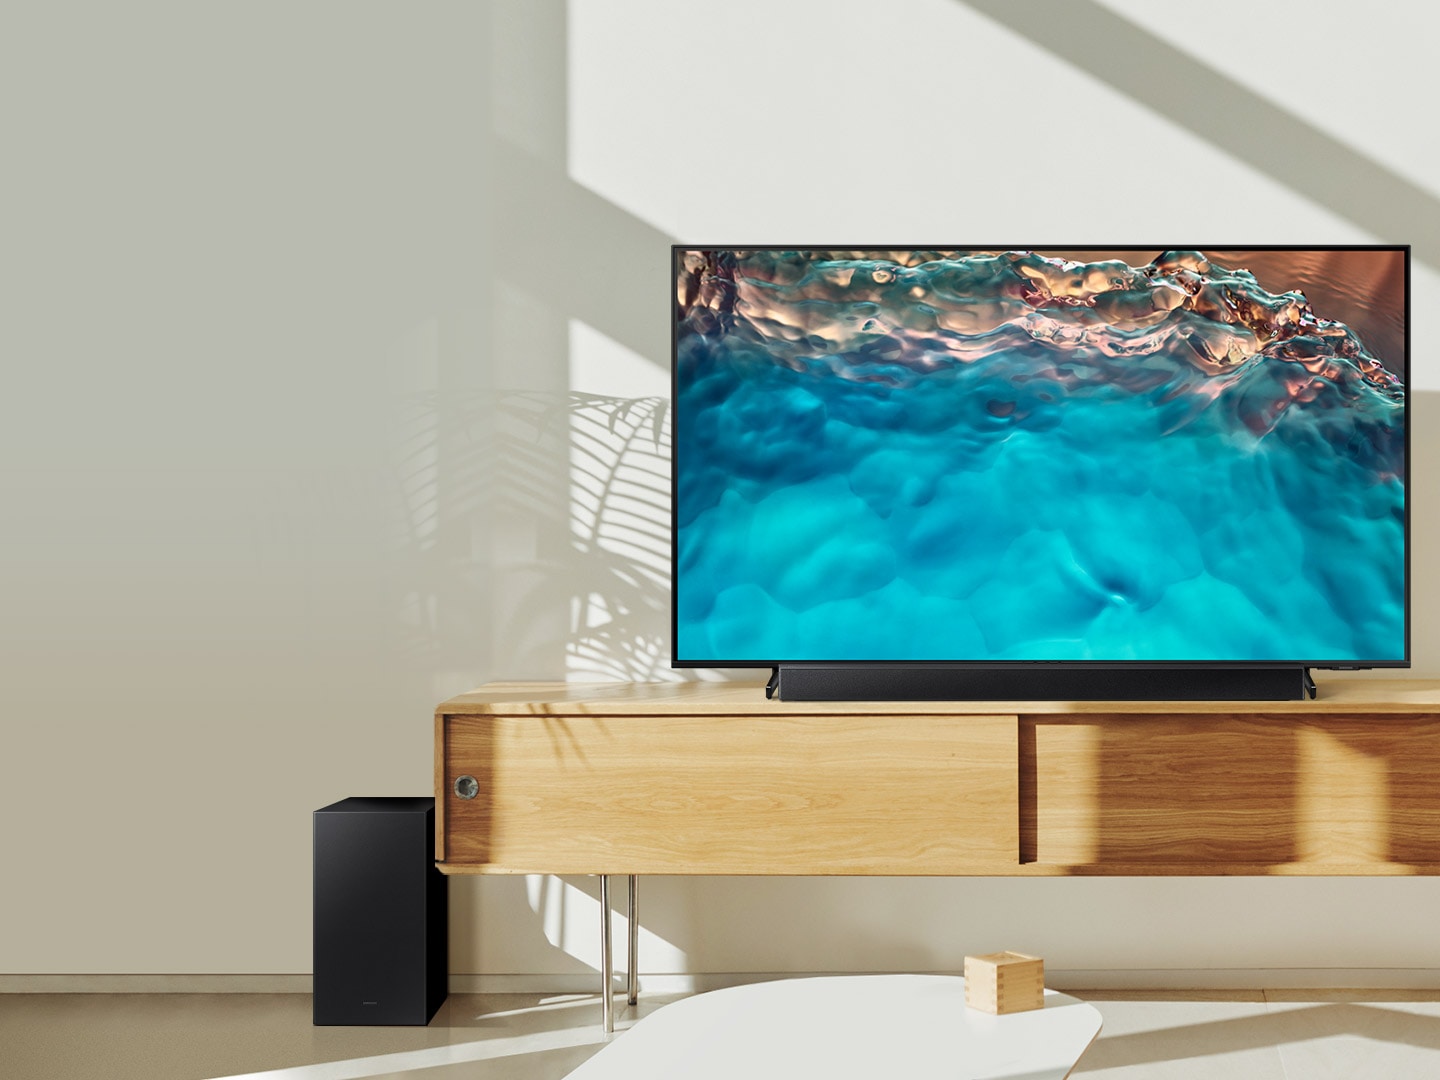 Soundbar dòng B và loa siêu trầm của Samsung được đặt cùng với TV Crystal UHD trên tủ phòng khách.